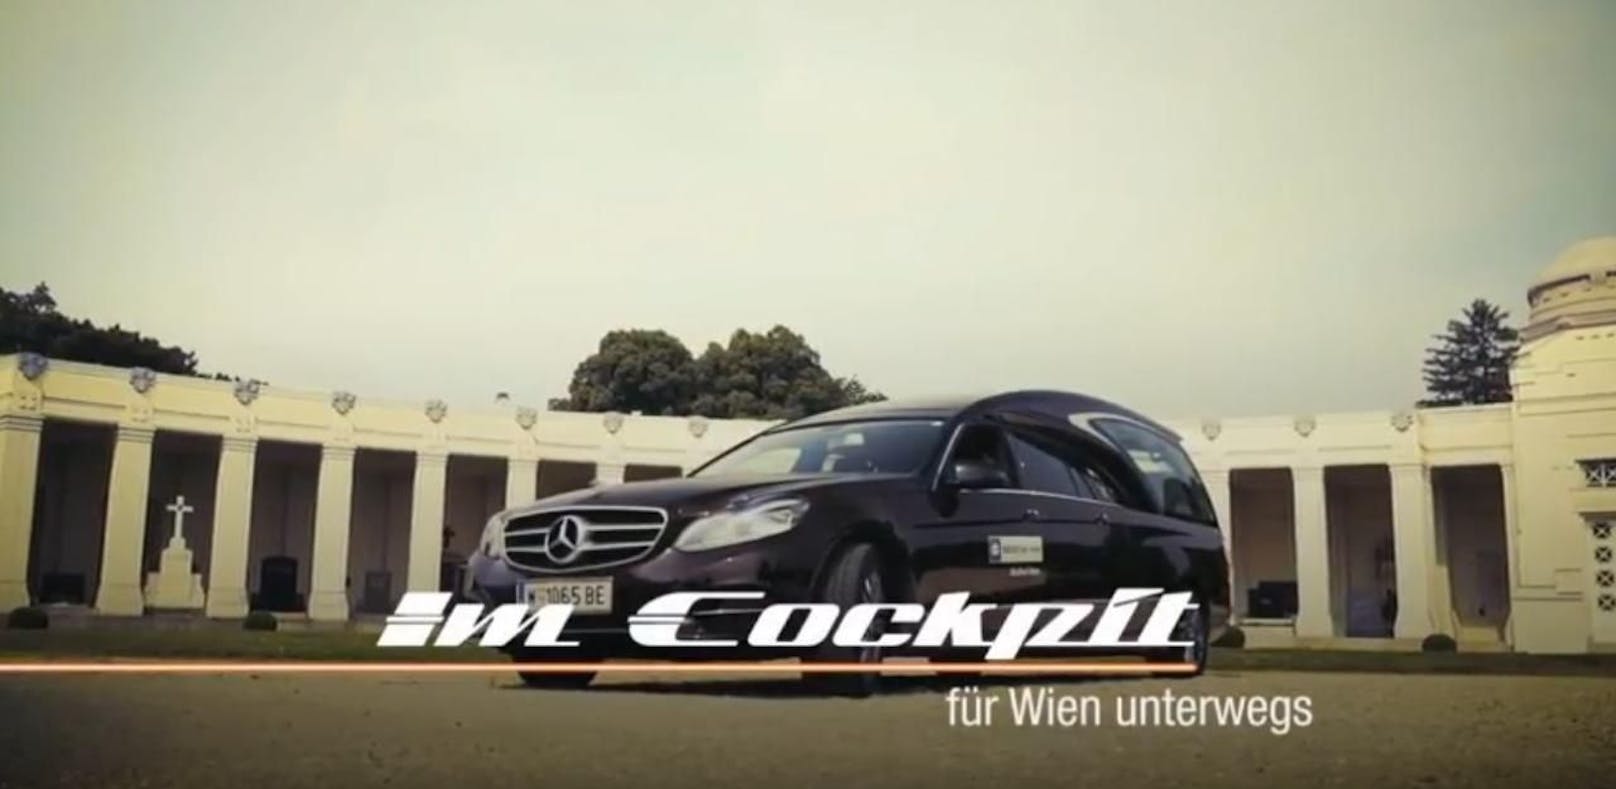 You Tube Channel der Stadt Wien: Aus der Video-Serie &quot;Im Cockpit&quot; 